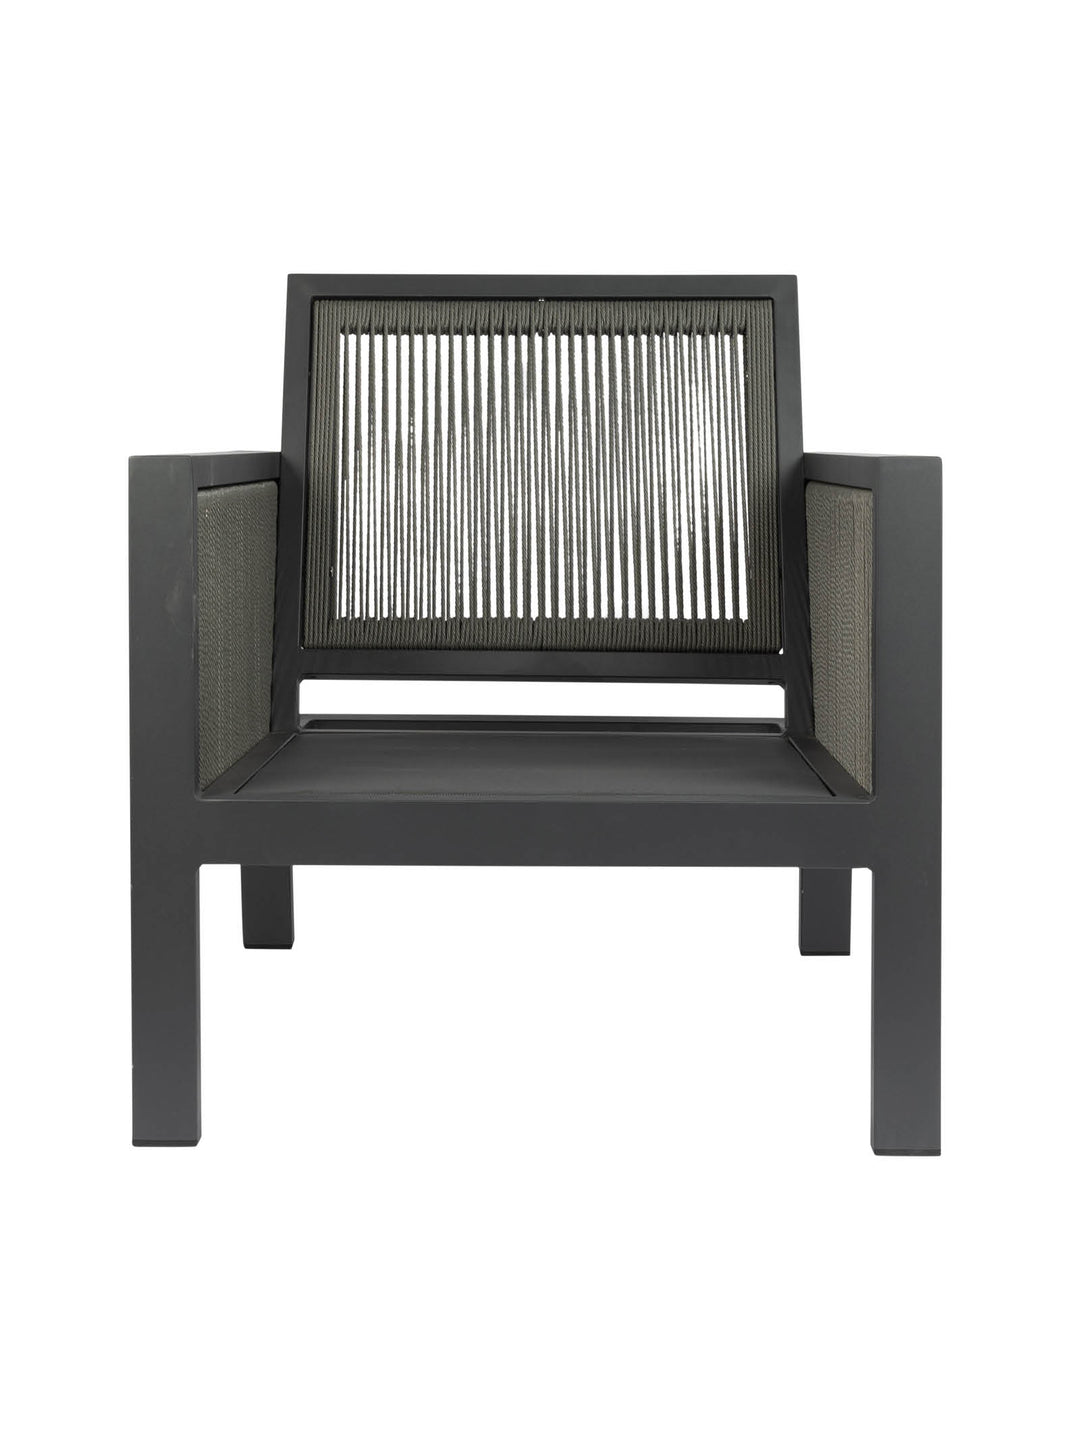 Atlas Outdoor Sofa Set - Outdoor Furniture - Chair- Hertex Haus Online - badge_fully_outdoor